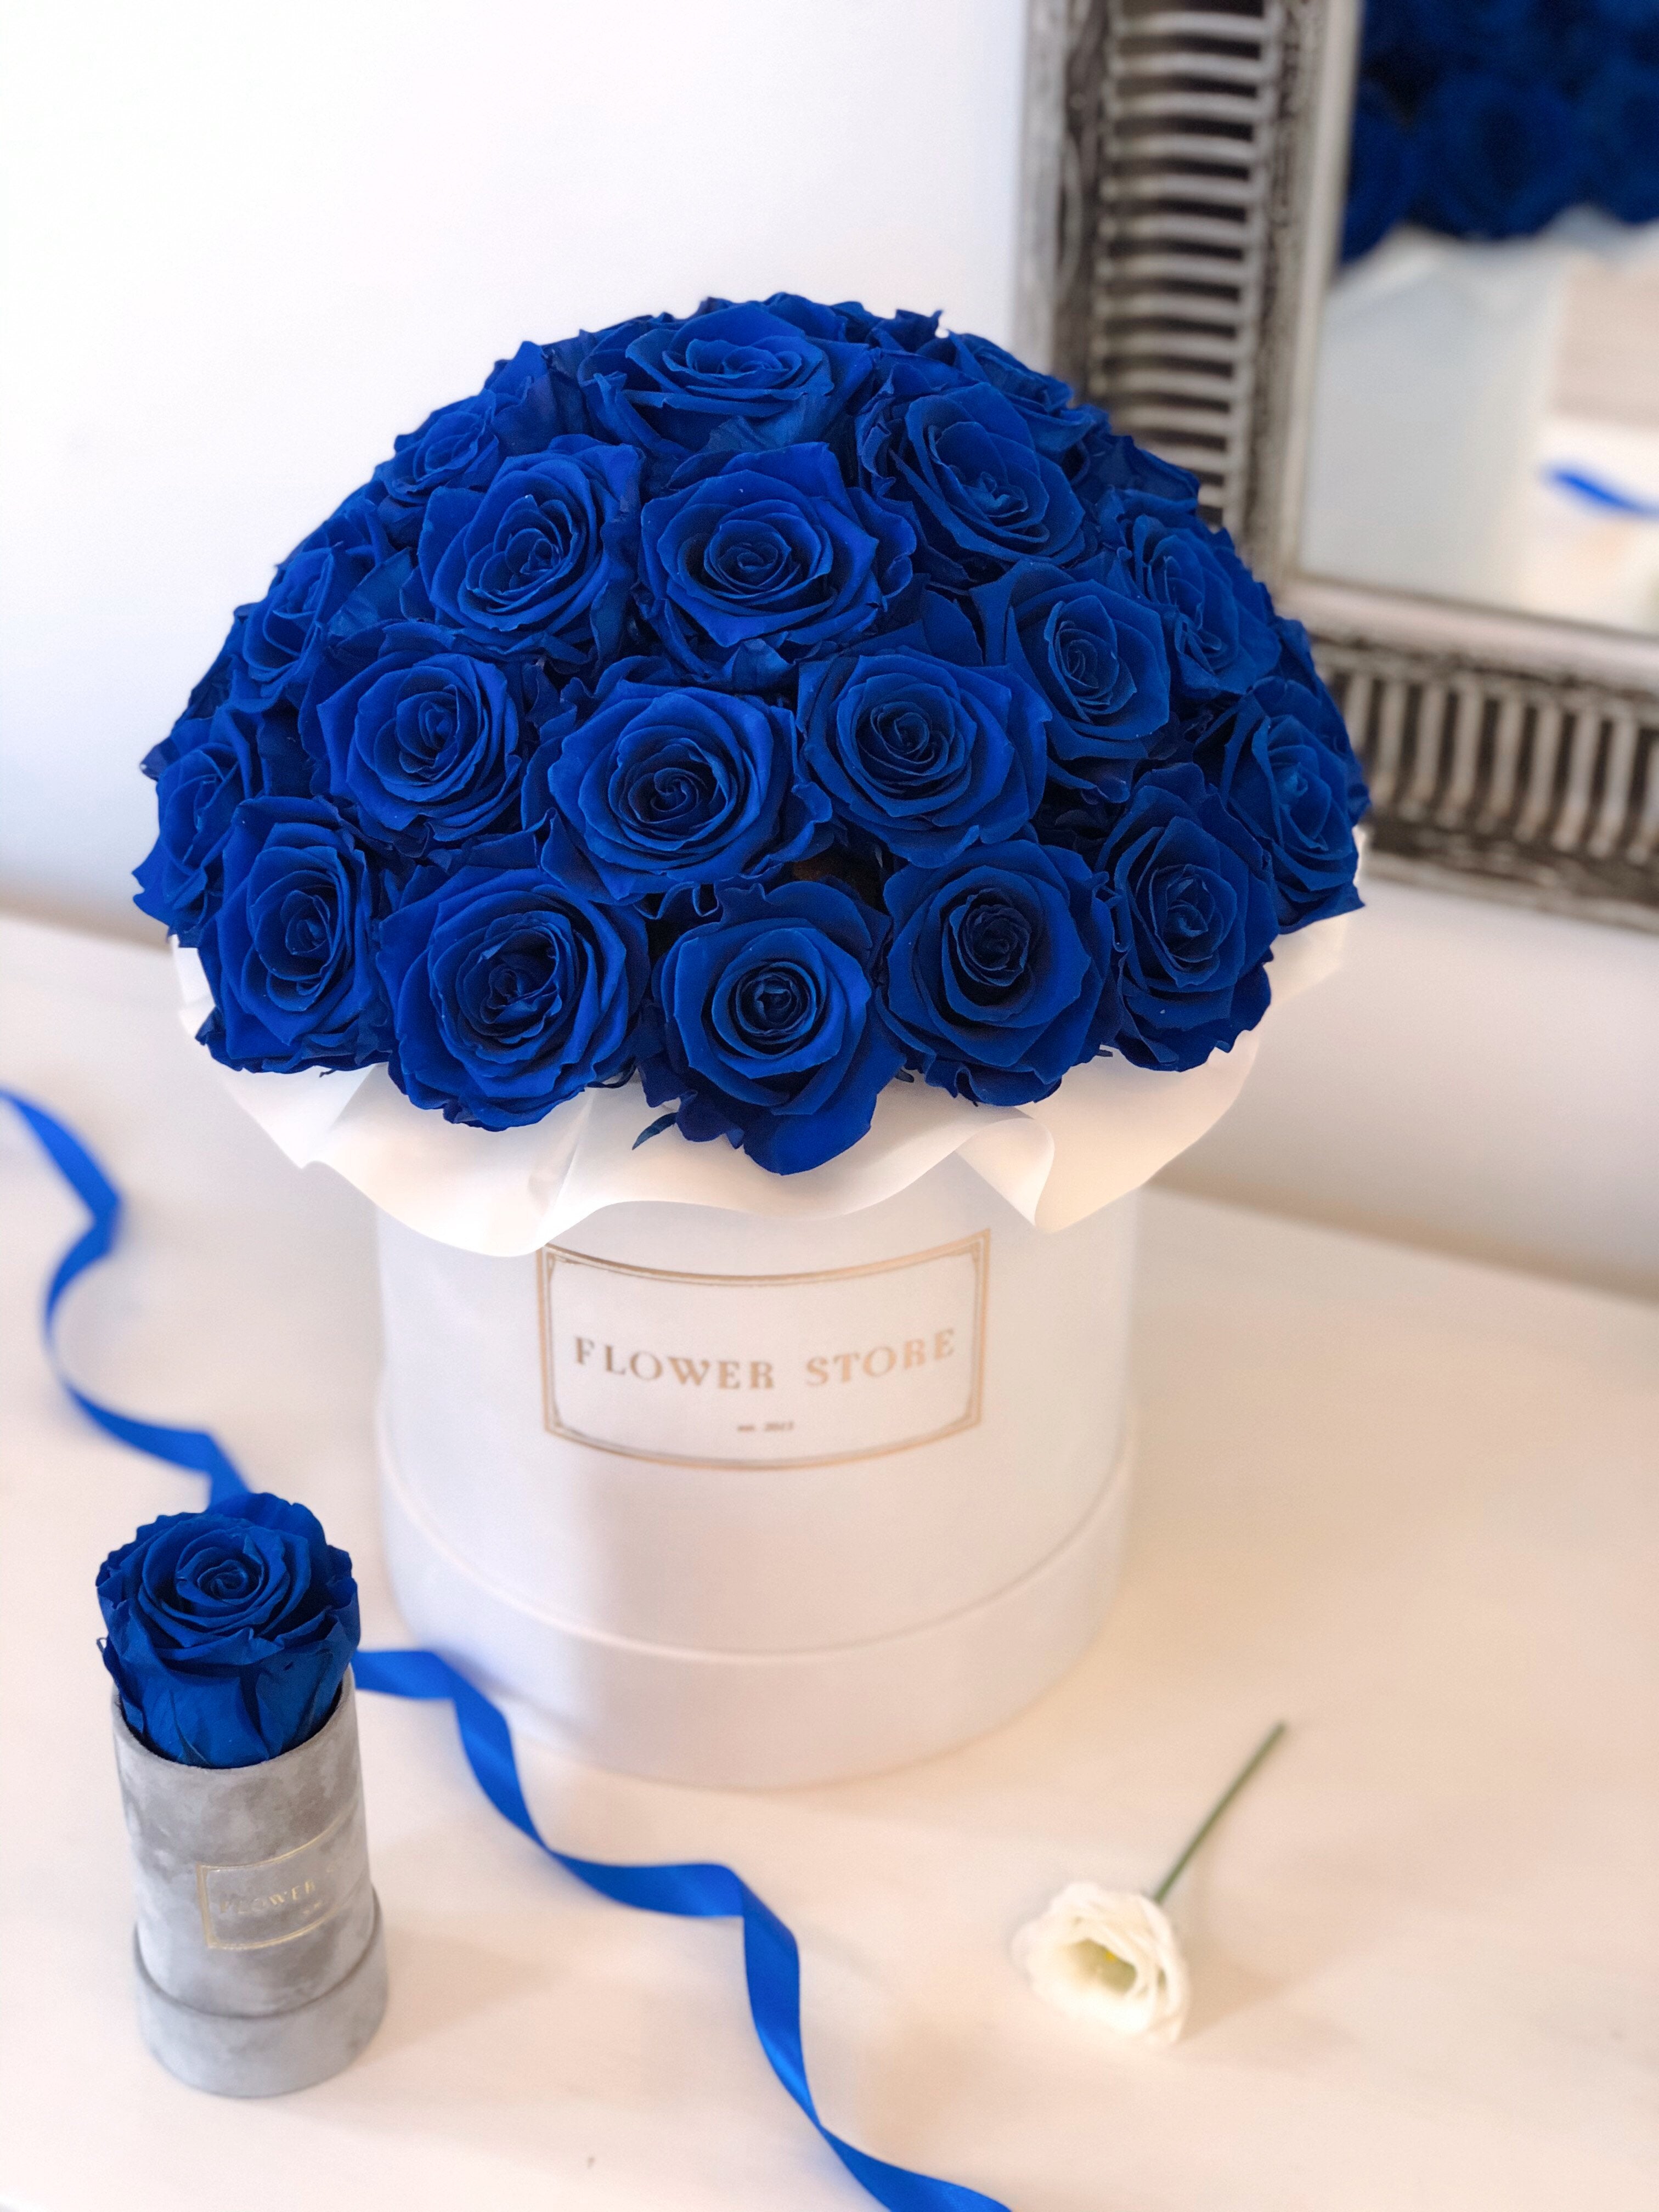 Большая белая коробка с темно-синими вечными розами - флауэрбокс.